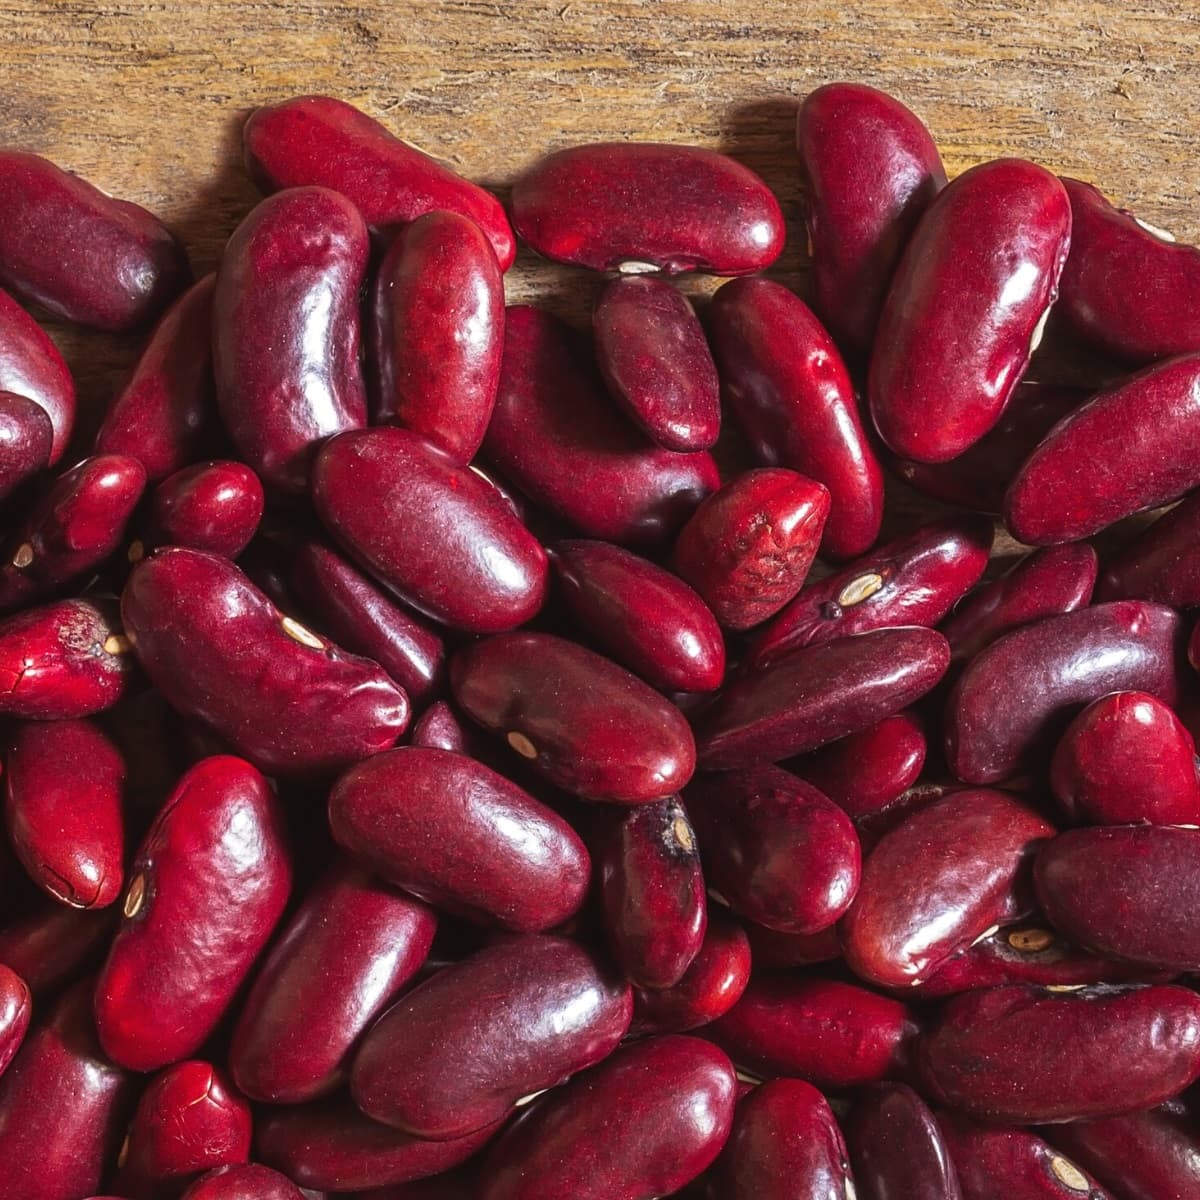 Kidney beans